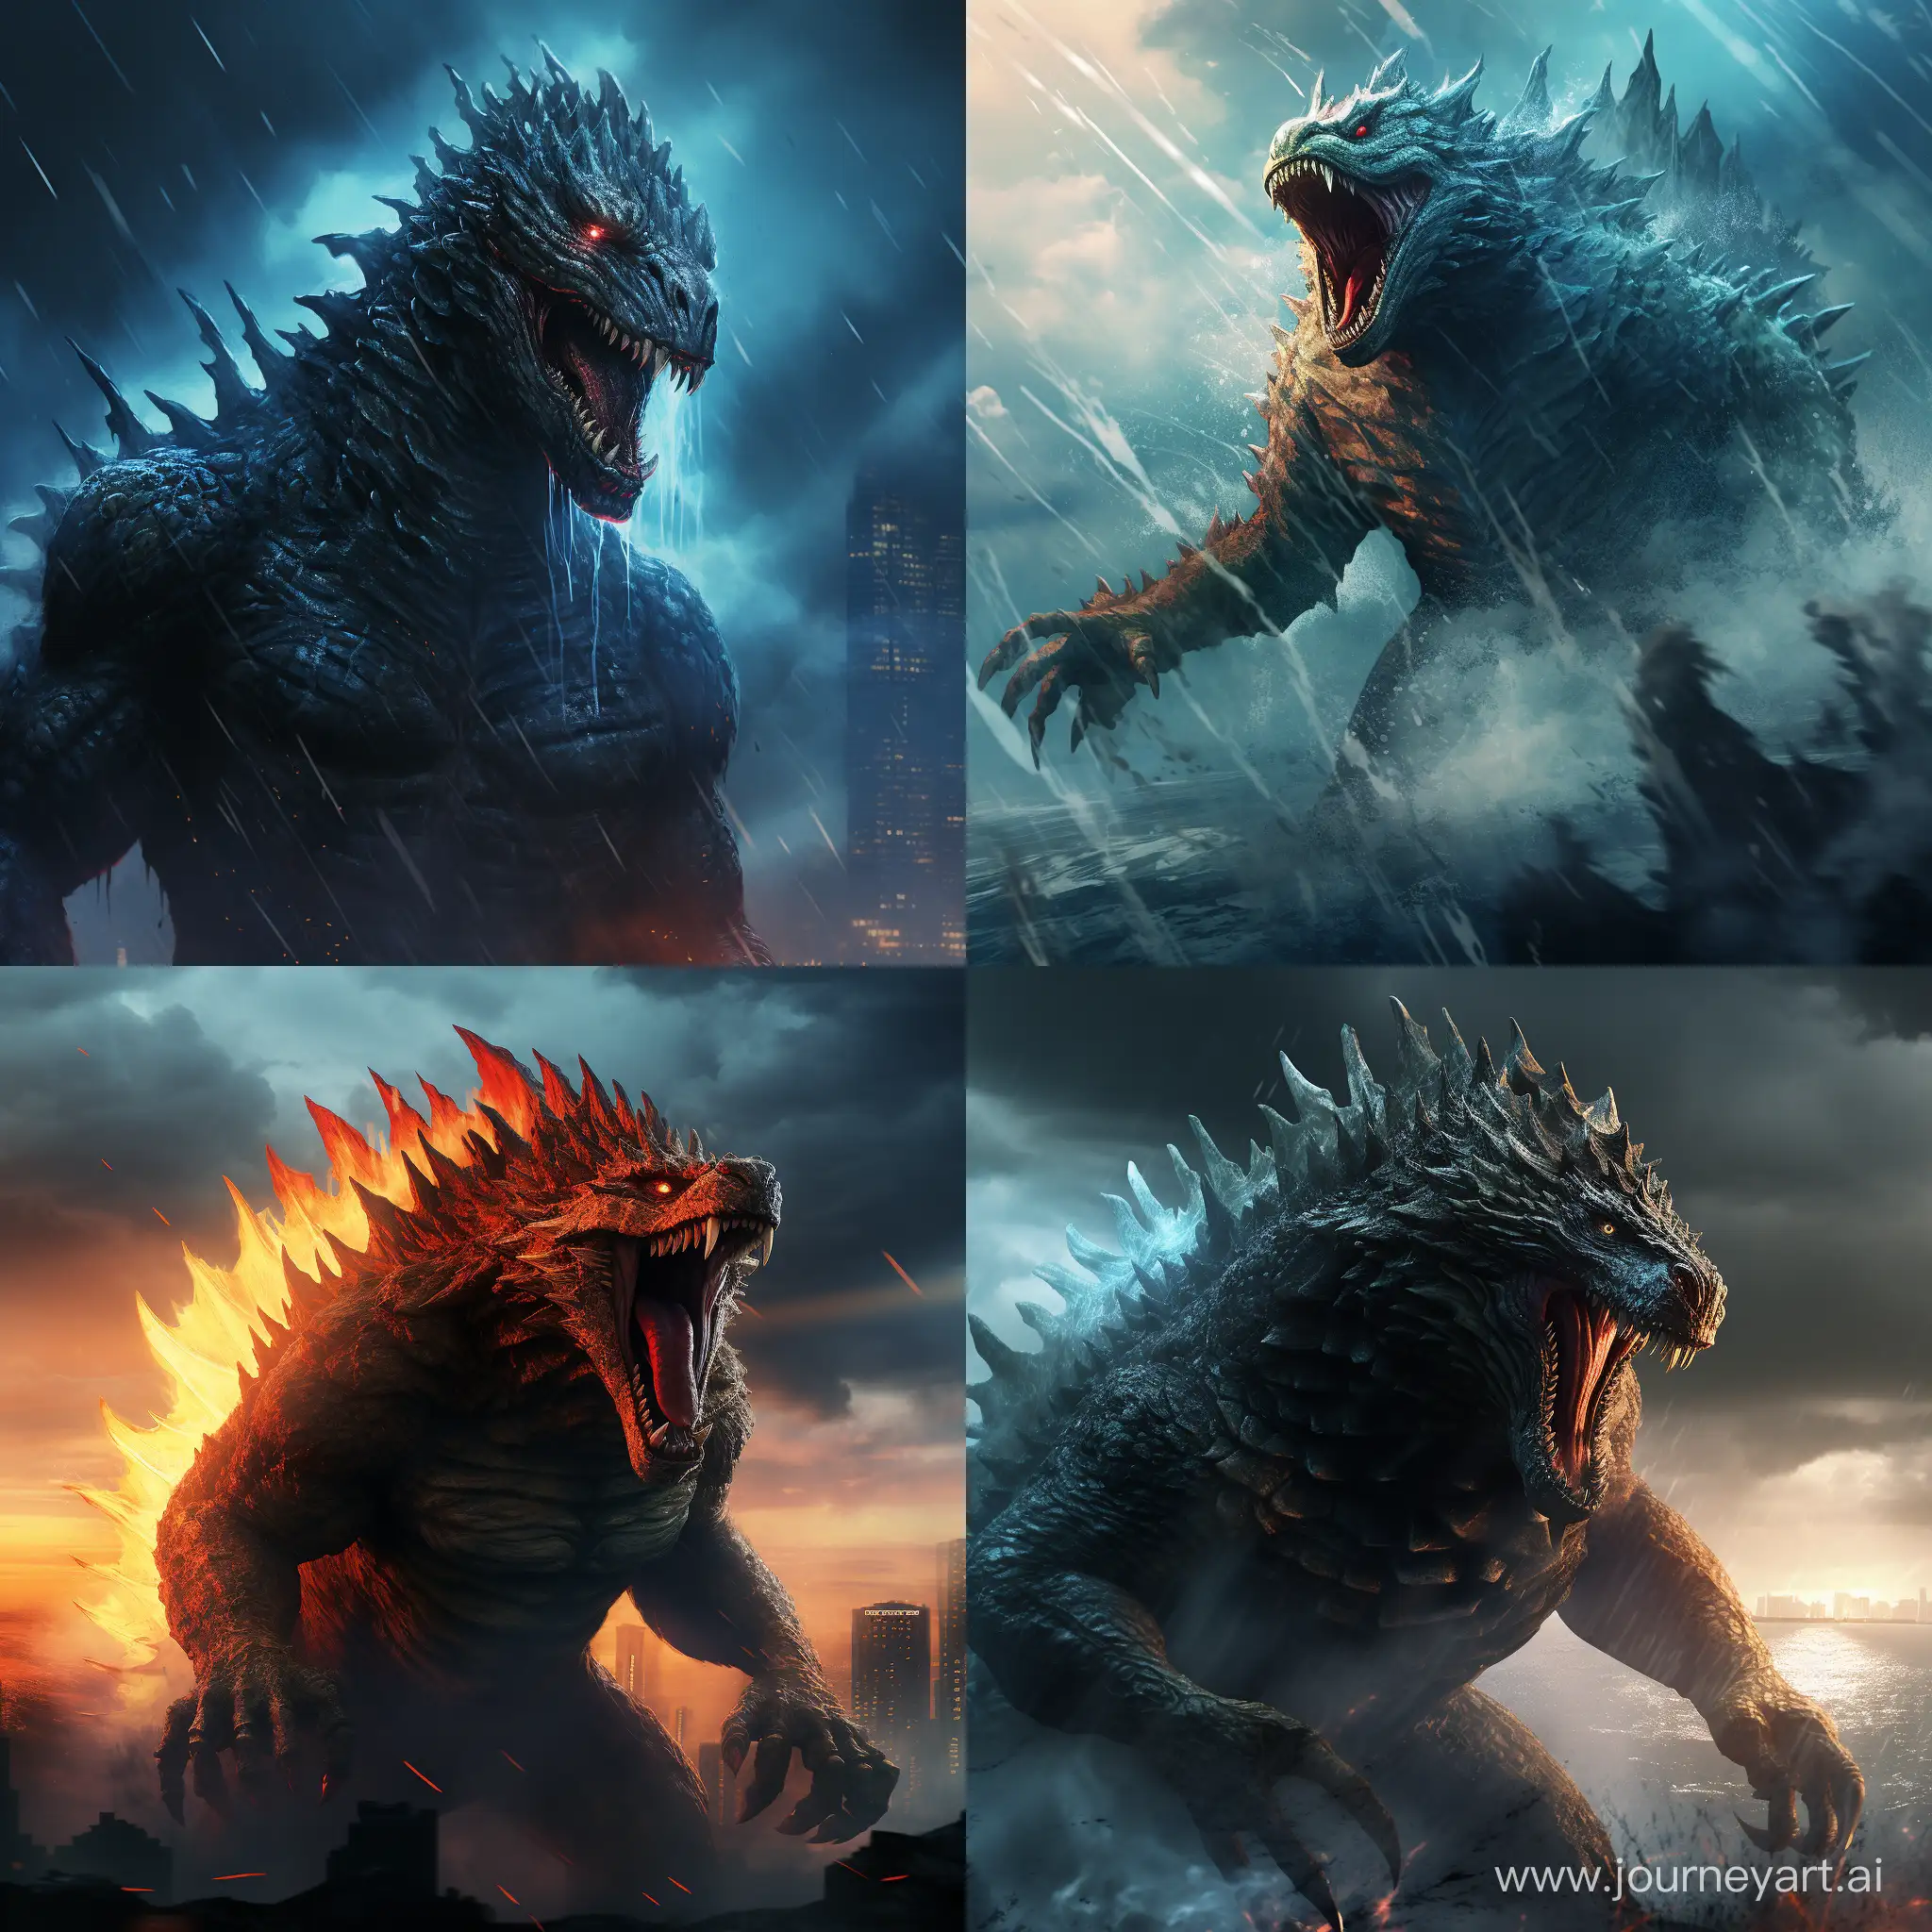 Monstrous-Encounter-Godzilla-in-a-Destructive-Roar